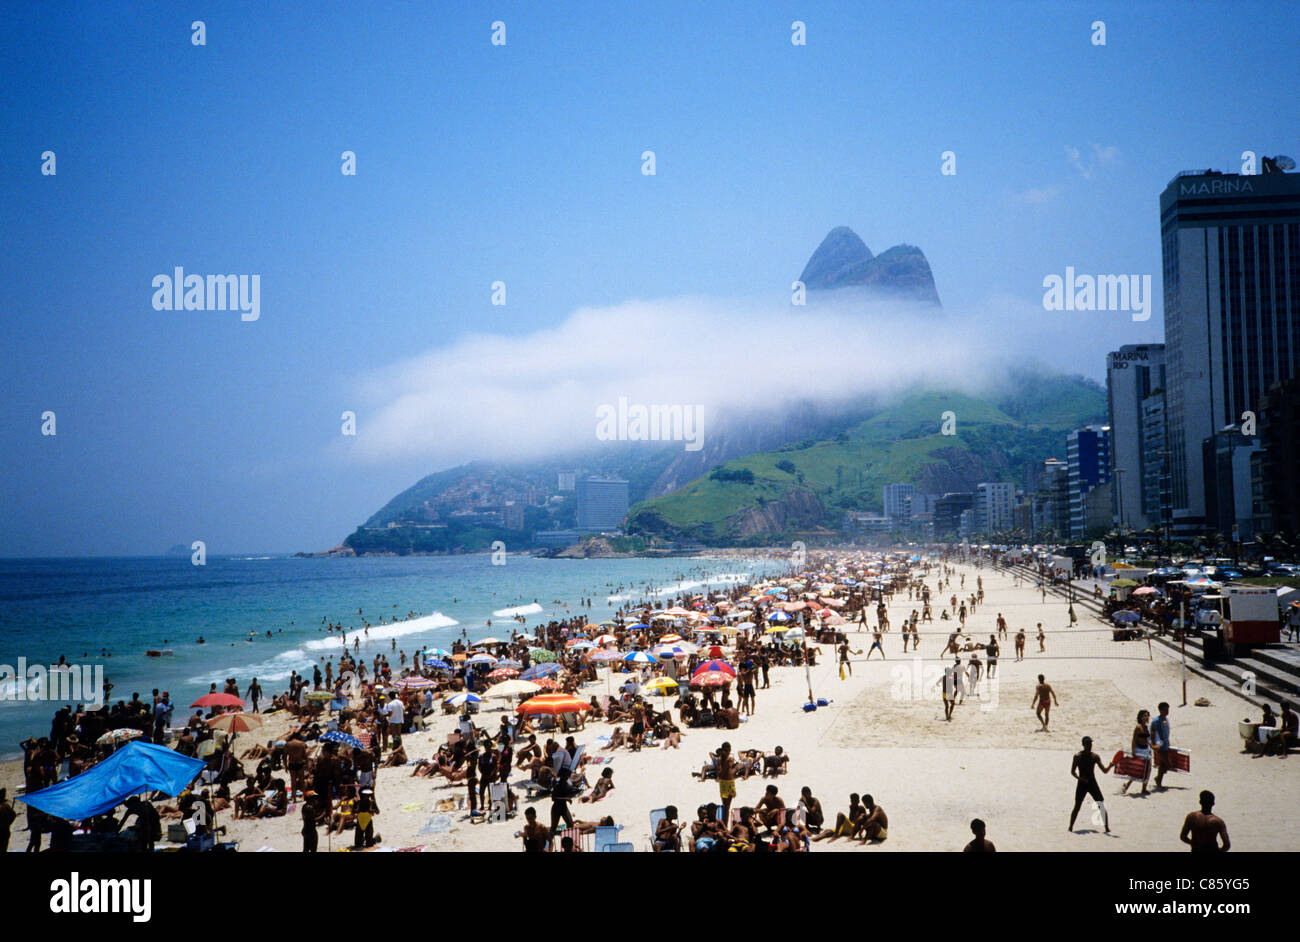 Rio de Janeiro, Brazil. Ipanema and Leblon beaches with the Dois Irmaos (Two Brothers) mountain. Stock Photo